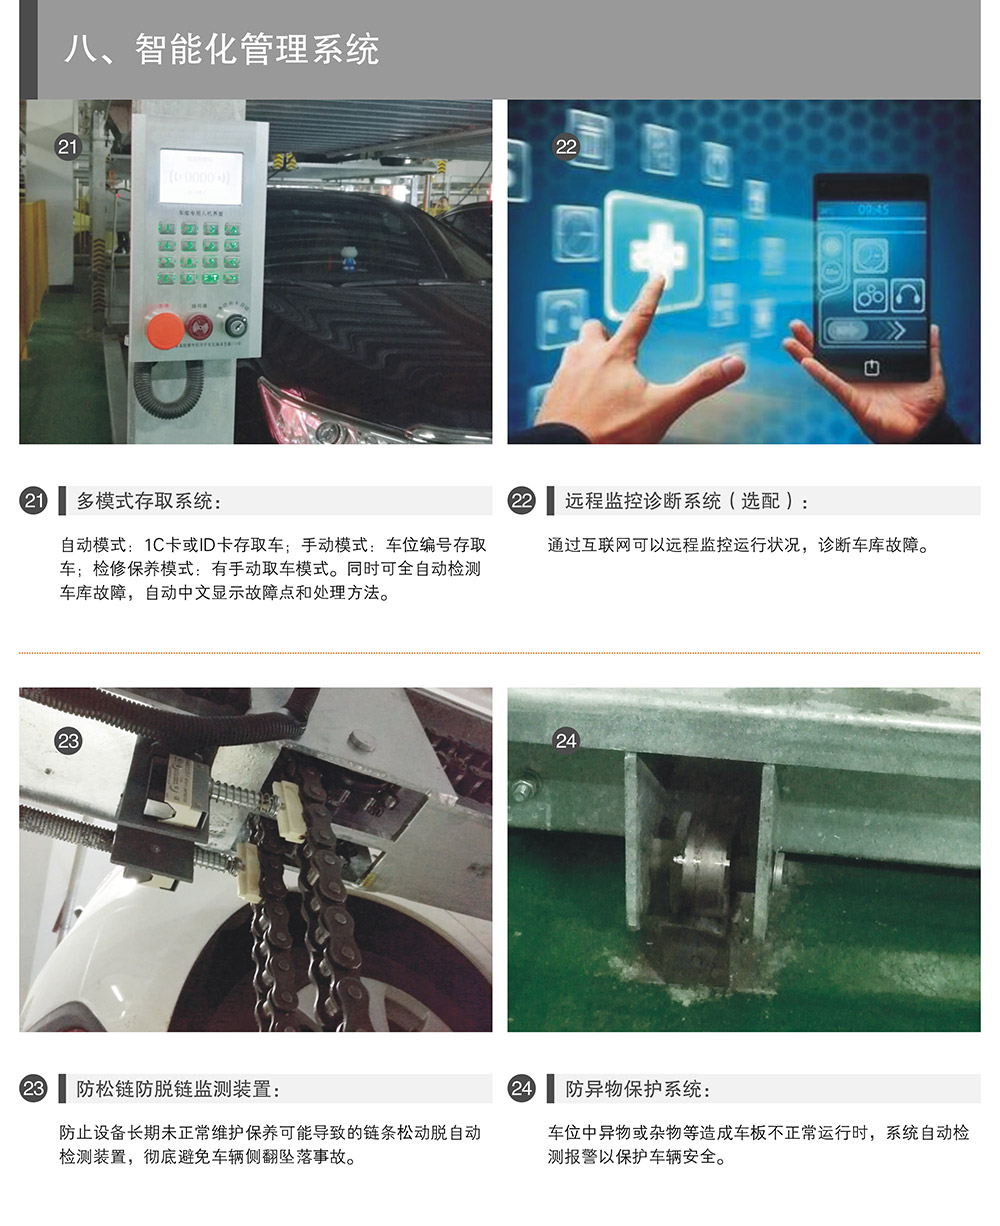 贵州贵阳负一正一地坑PSH2D1二层升降横移立体停车设备智能化管理系统.jpg